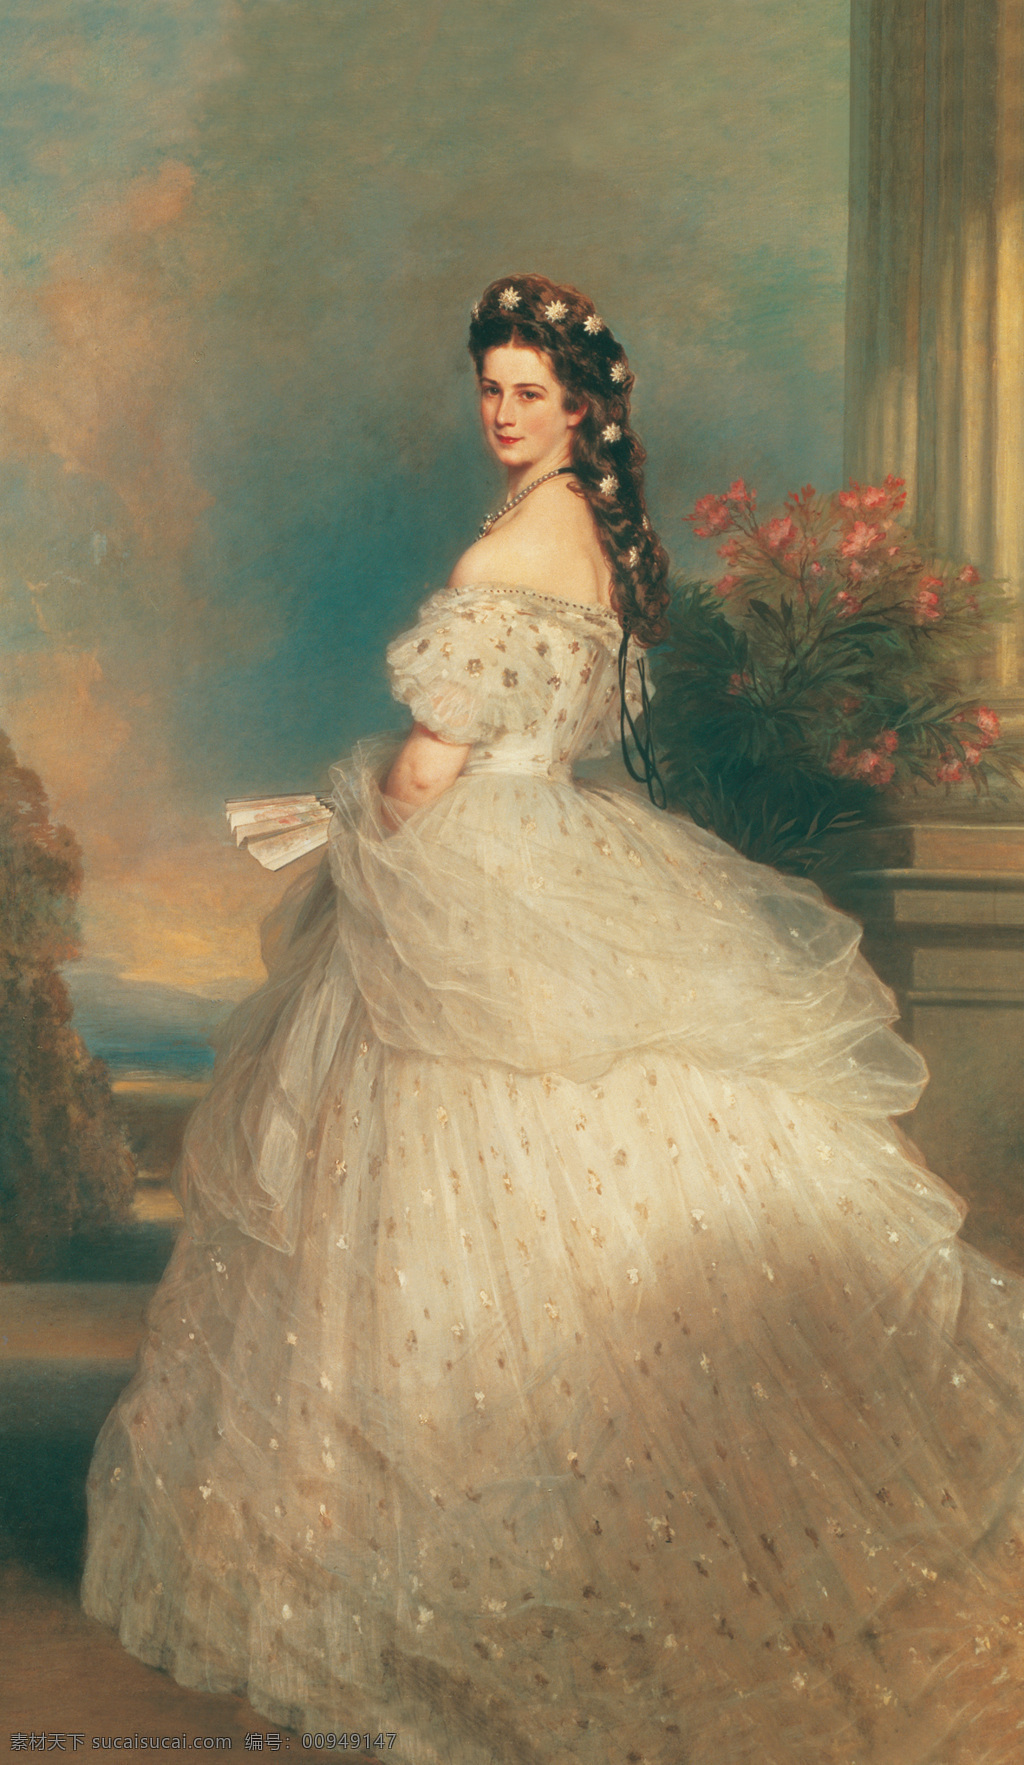 弗朗茨 辛 克维尔 温特 作品 奥地利 伊丽莎白 皇后 巴伐丽娅公主 茜茜 阿玛 丽娅 欧仁 妮 公主 19世纪油画 油画 绘画书法 文化艺术